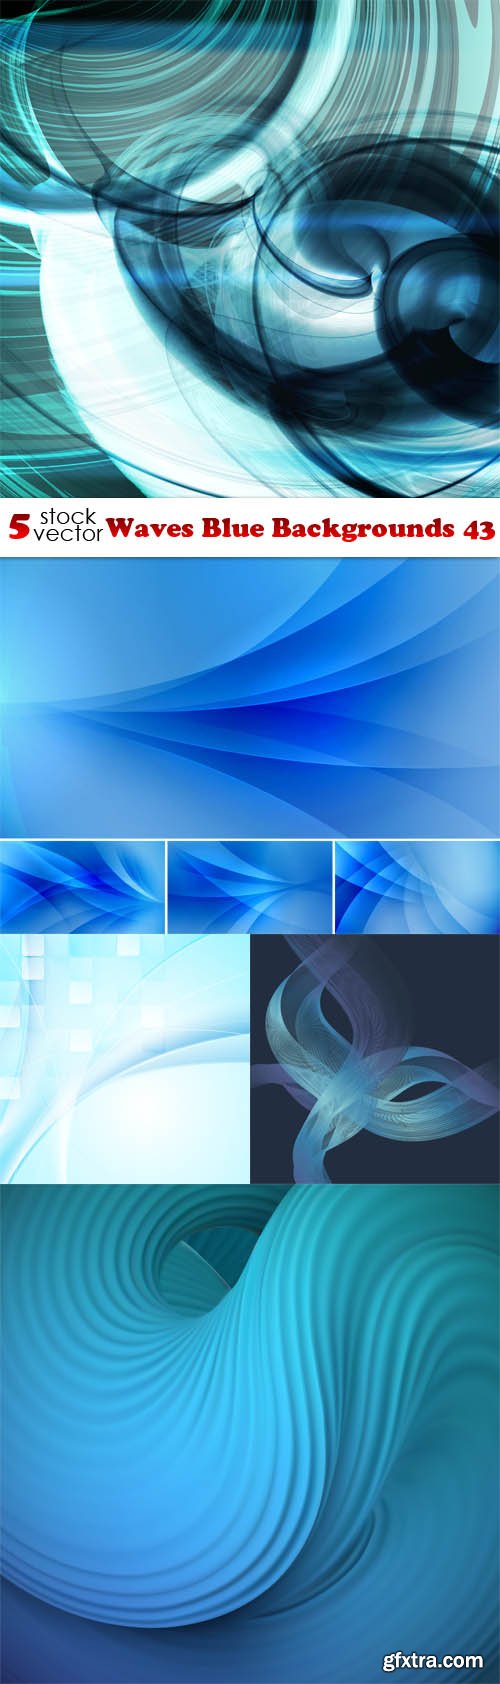 Vectors - Waves Blue Backgrounds 43